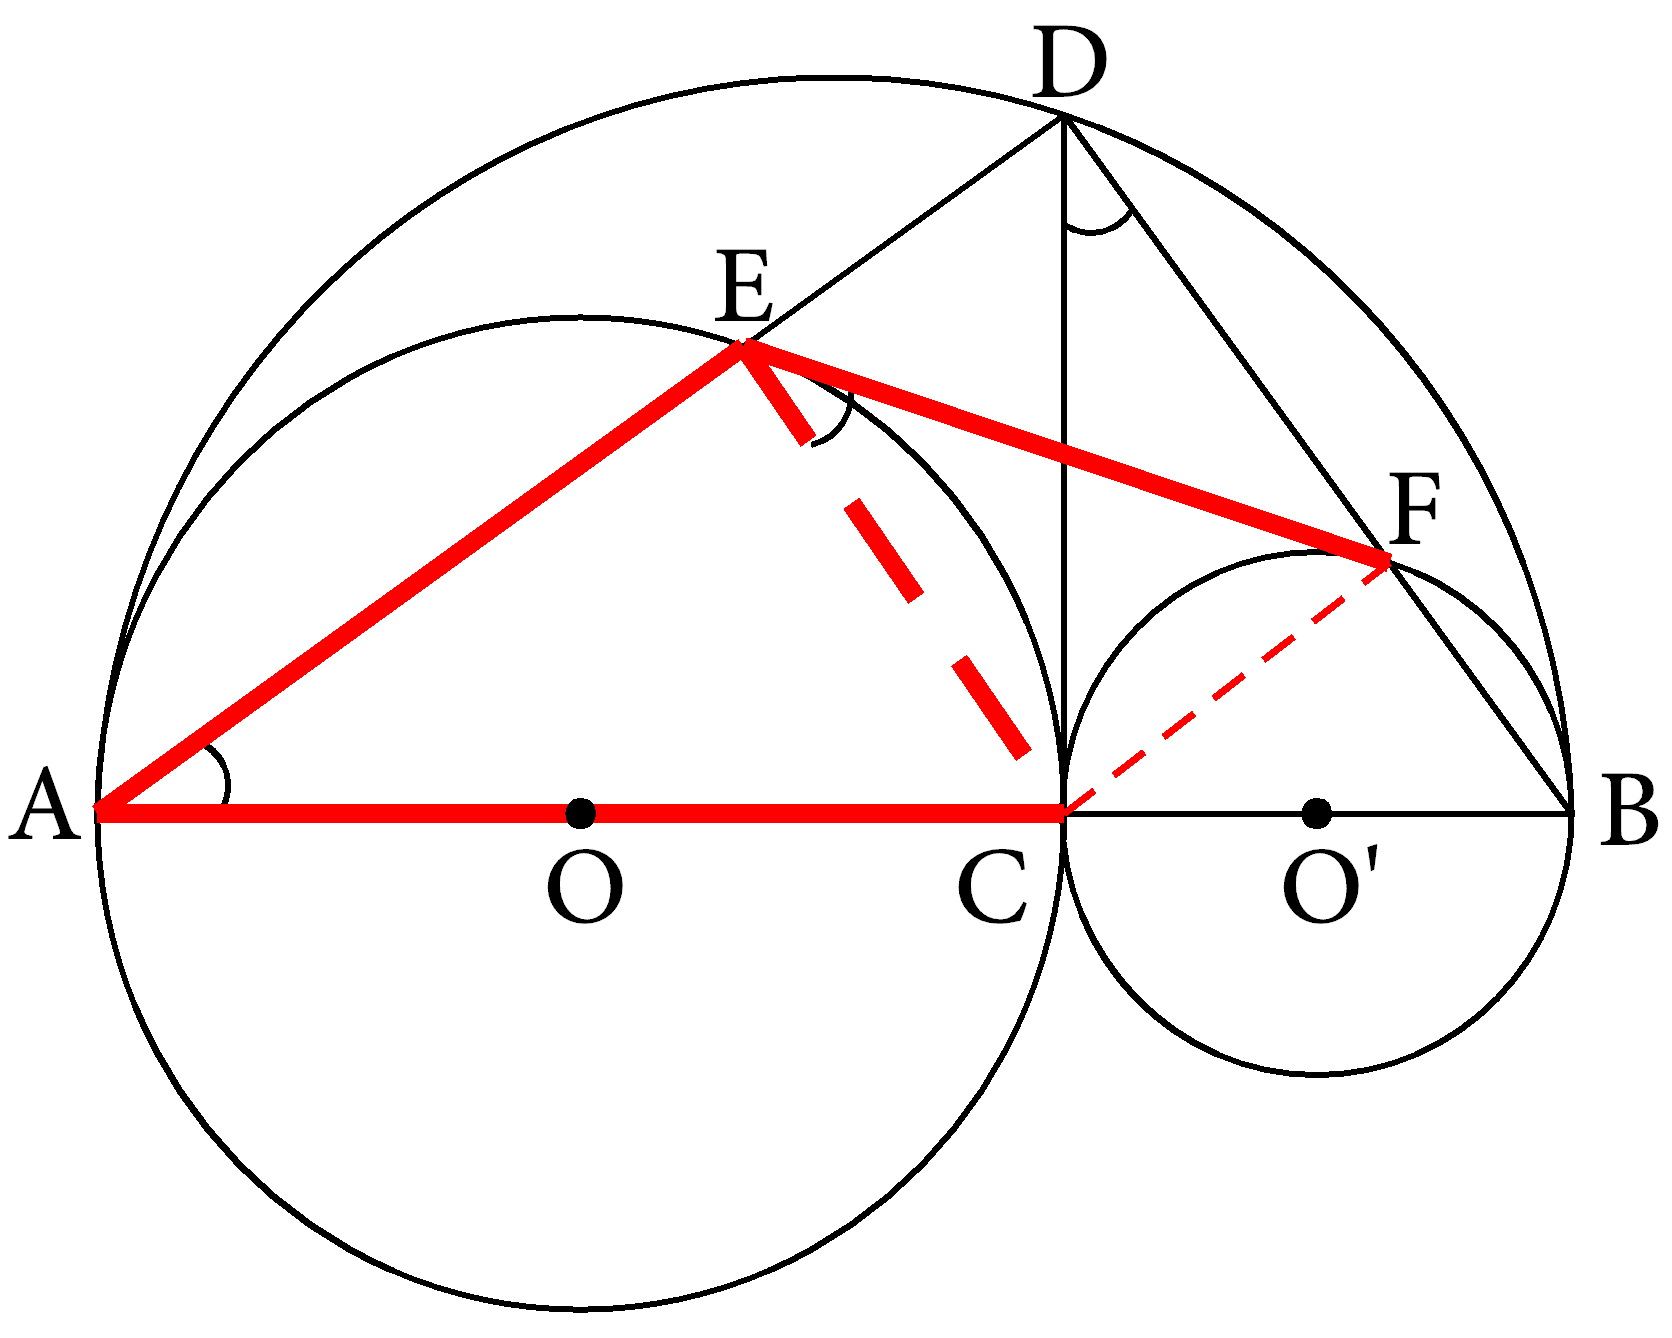 基本图形分析法:弦切角问题怎样思考(十七)